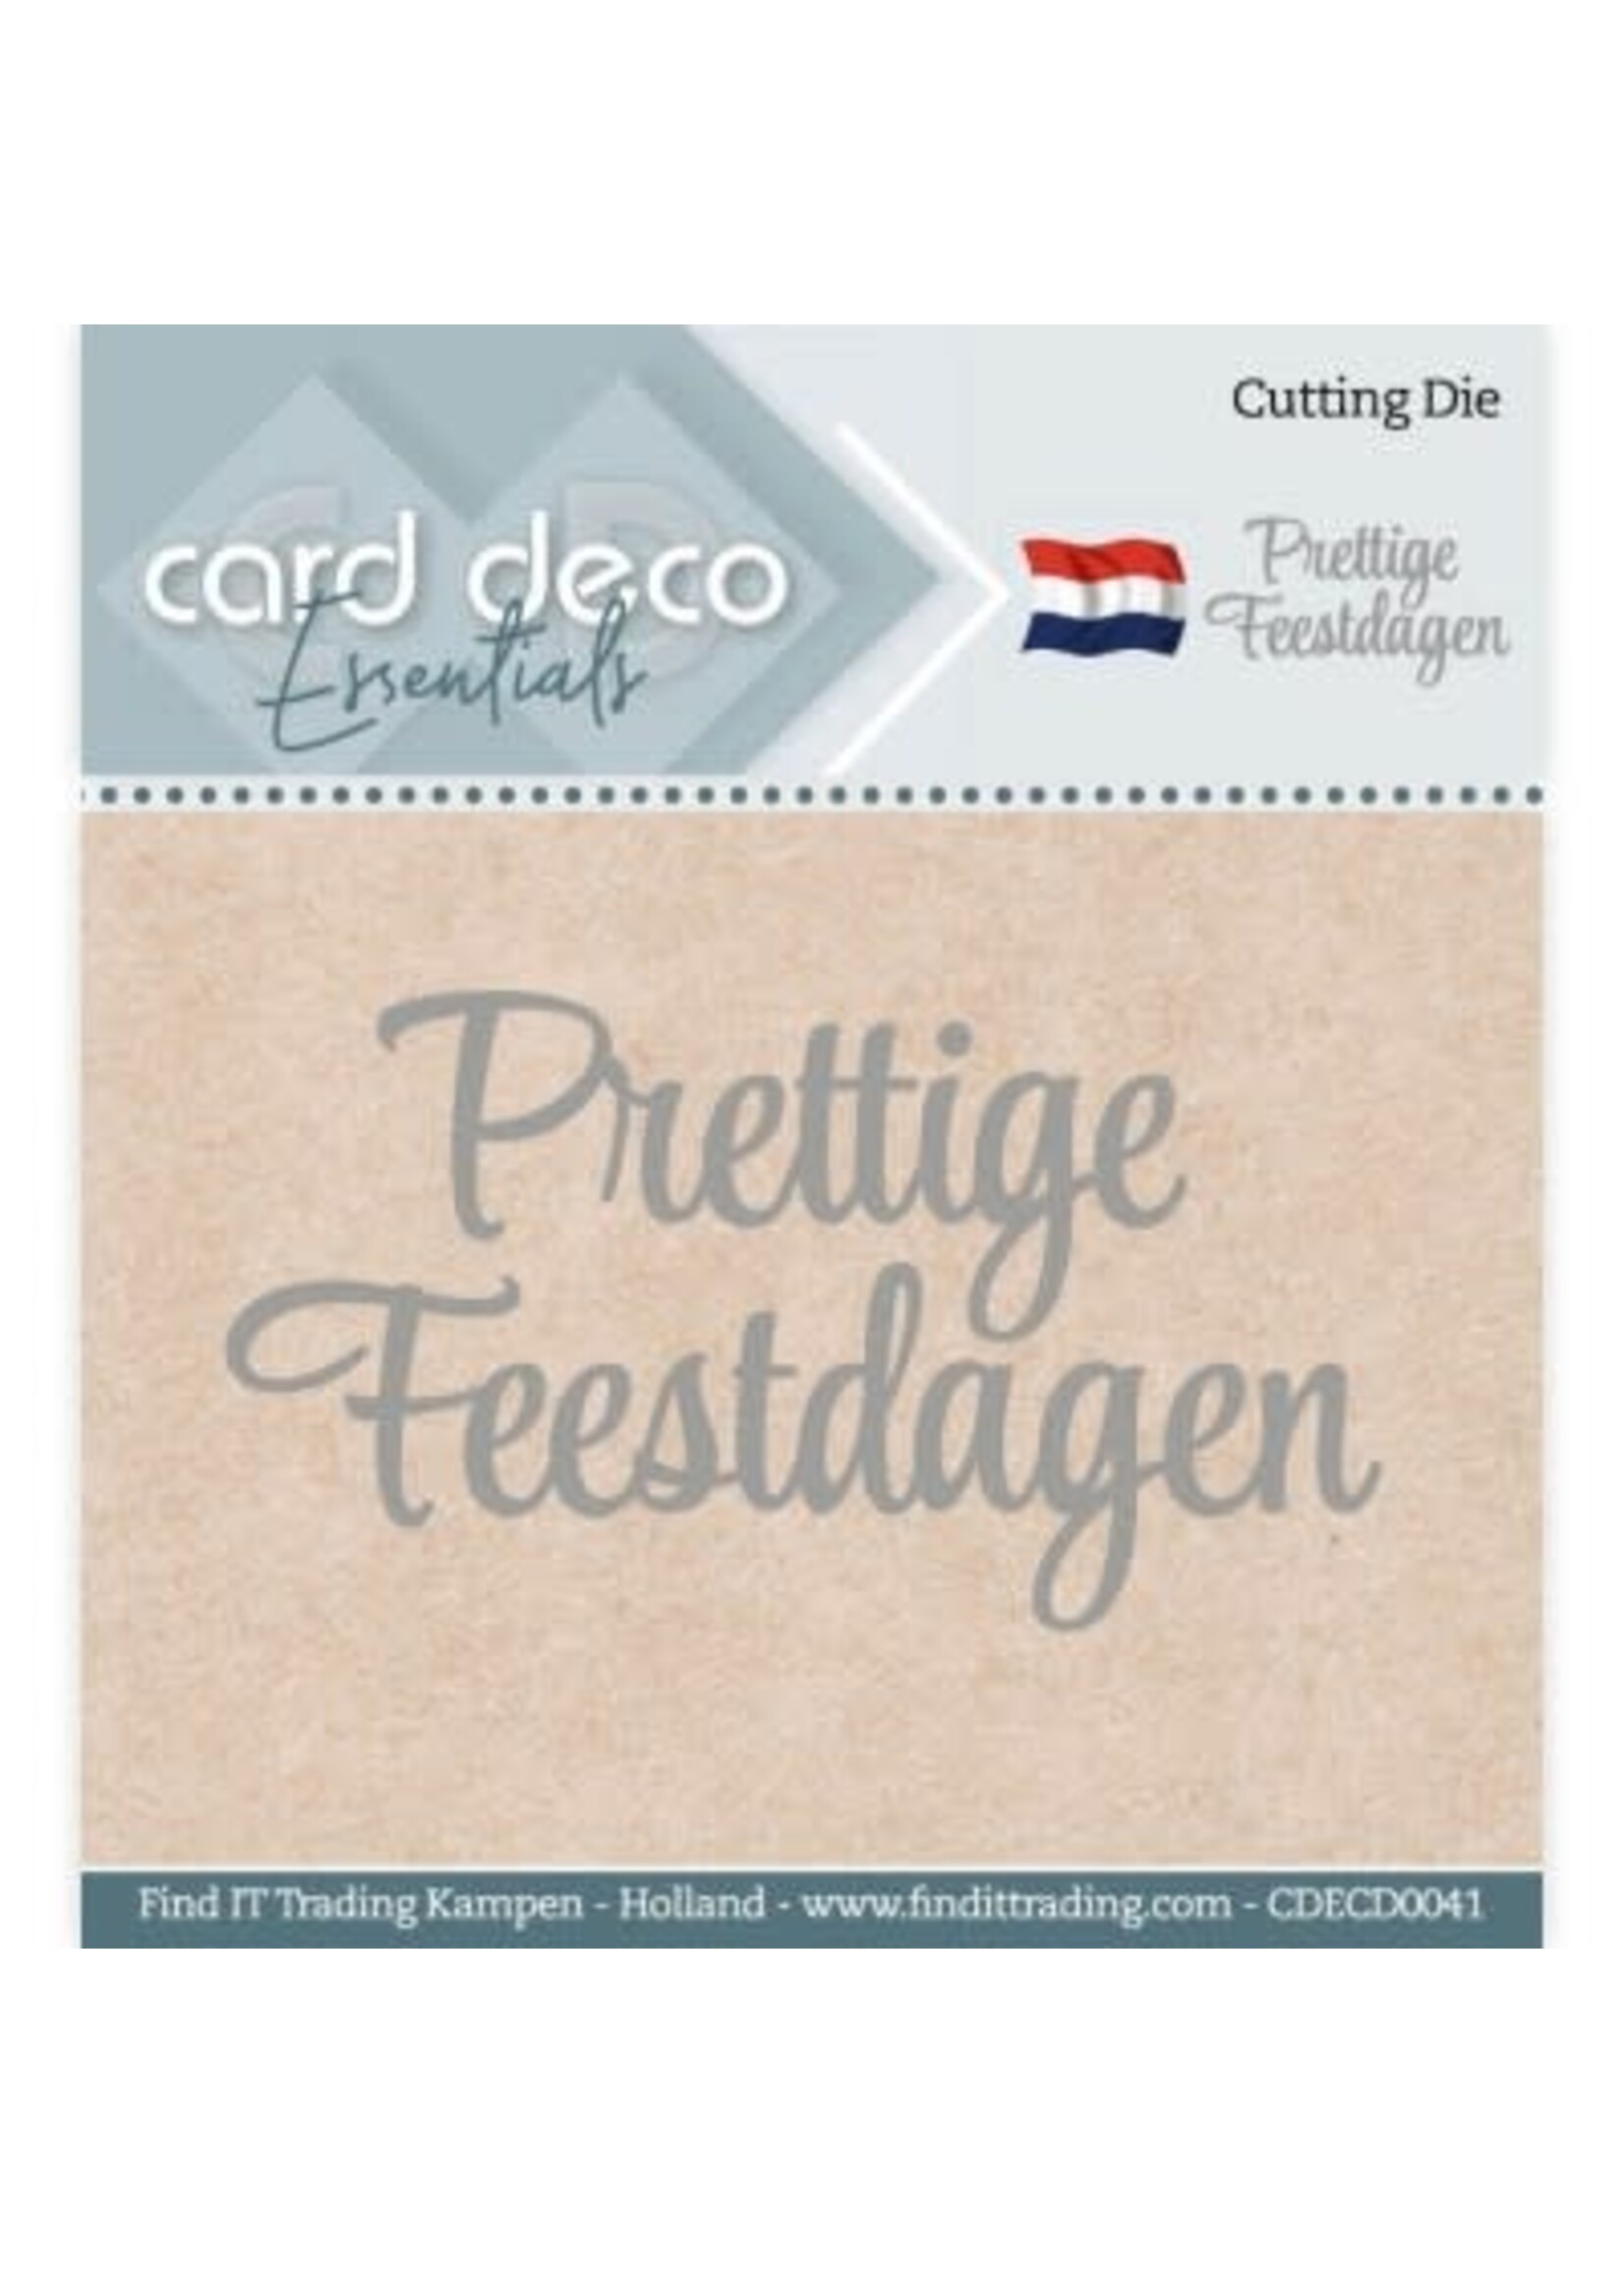 carddeco Card Deco Essentials - Cutting Dies - Prettige Feestdagen